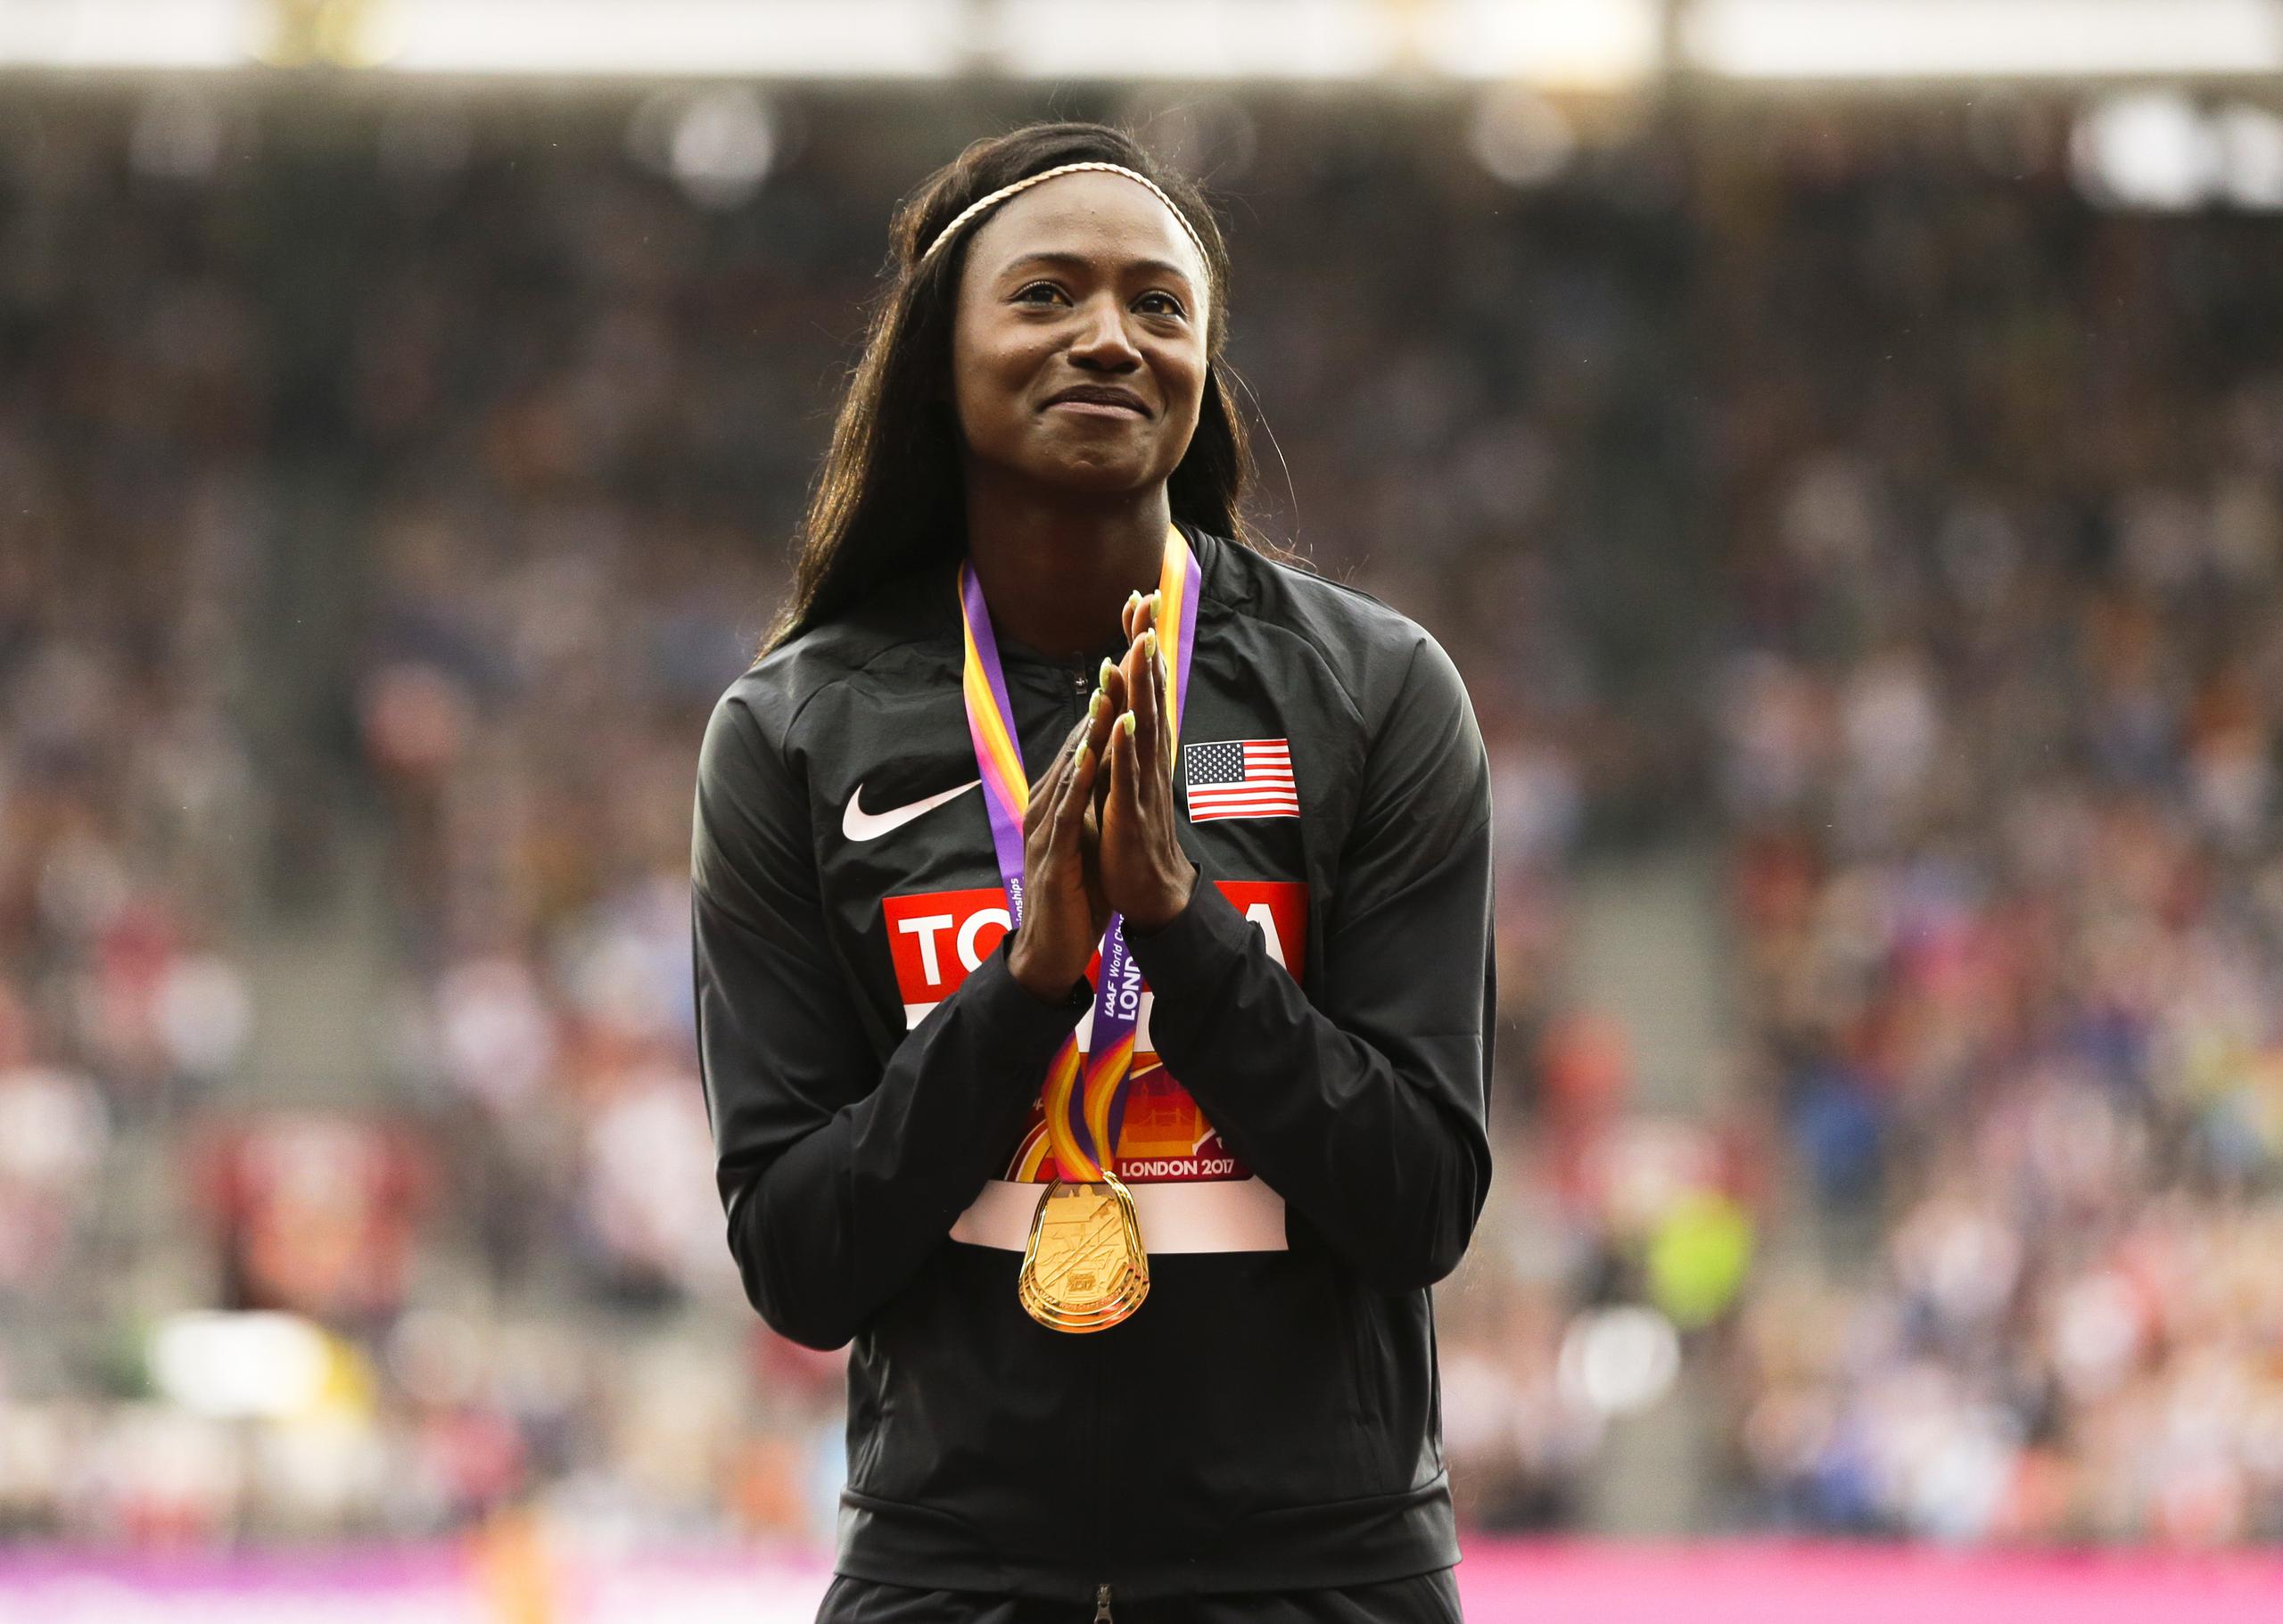 Tori Bowie aparece aquí celebrando la medalla de oro de los 100 metros que ganó en el Campeonato Mundial de Atletismo del 2017.